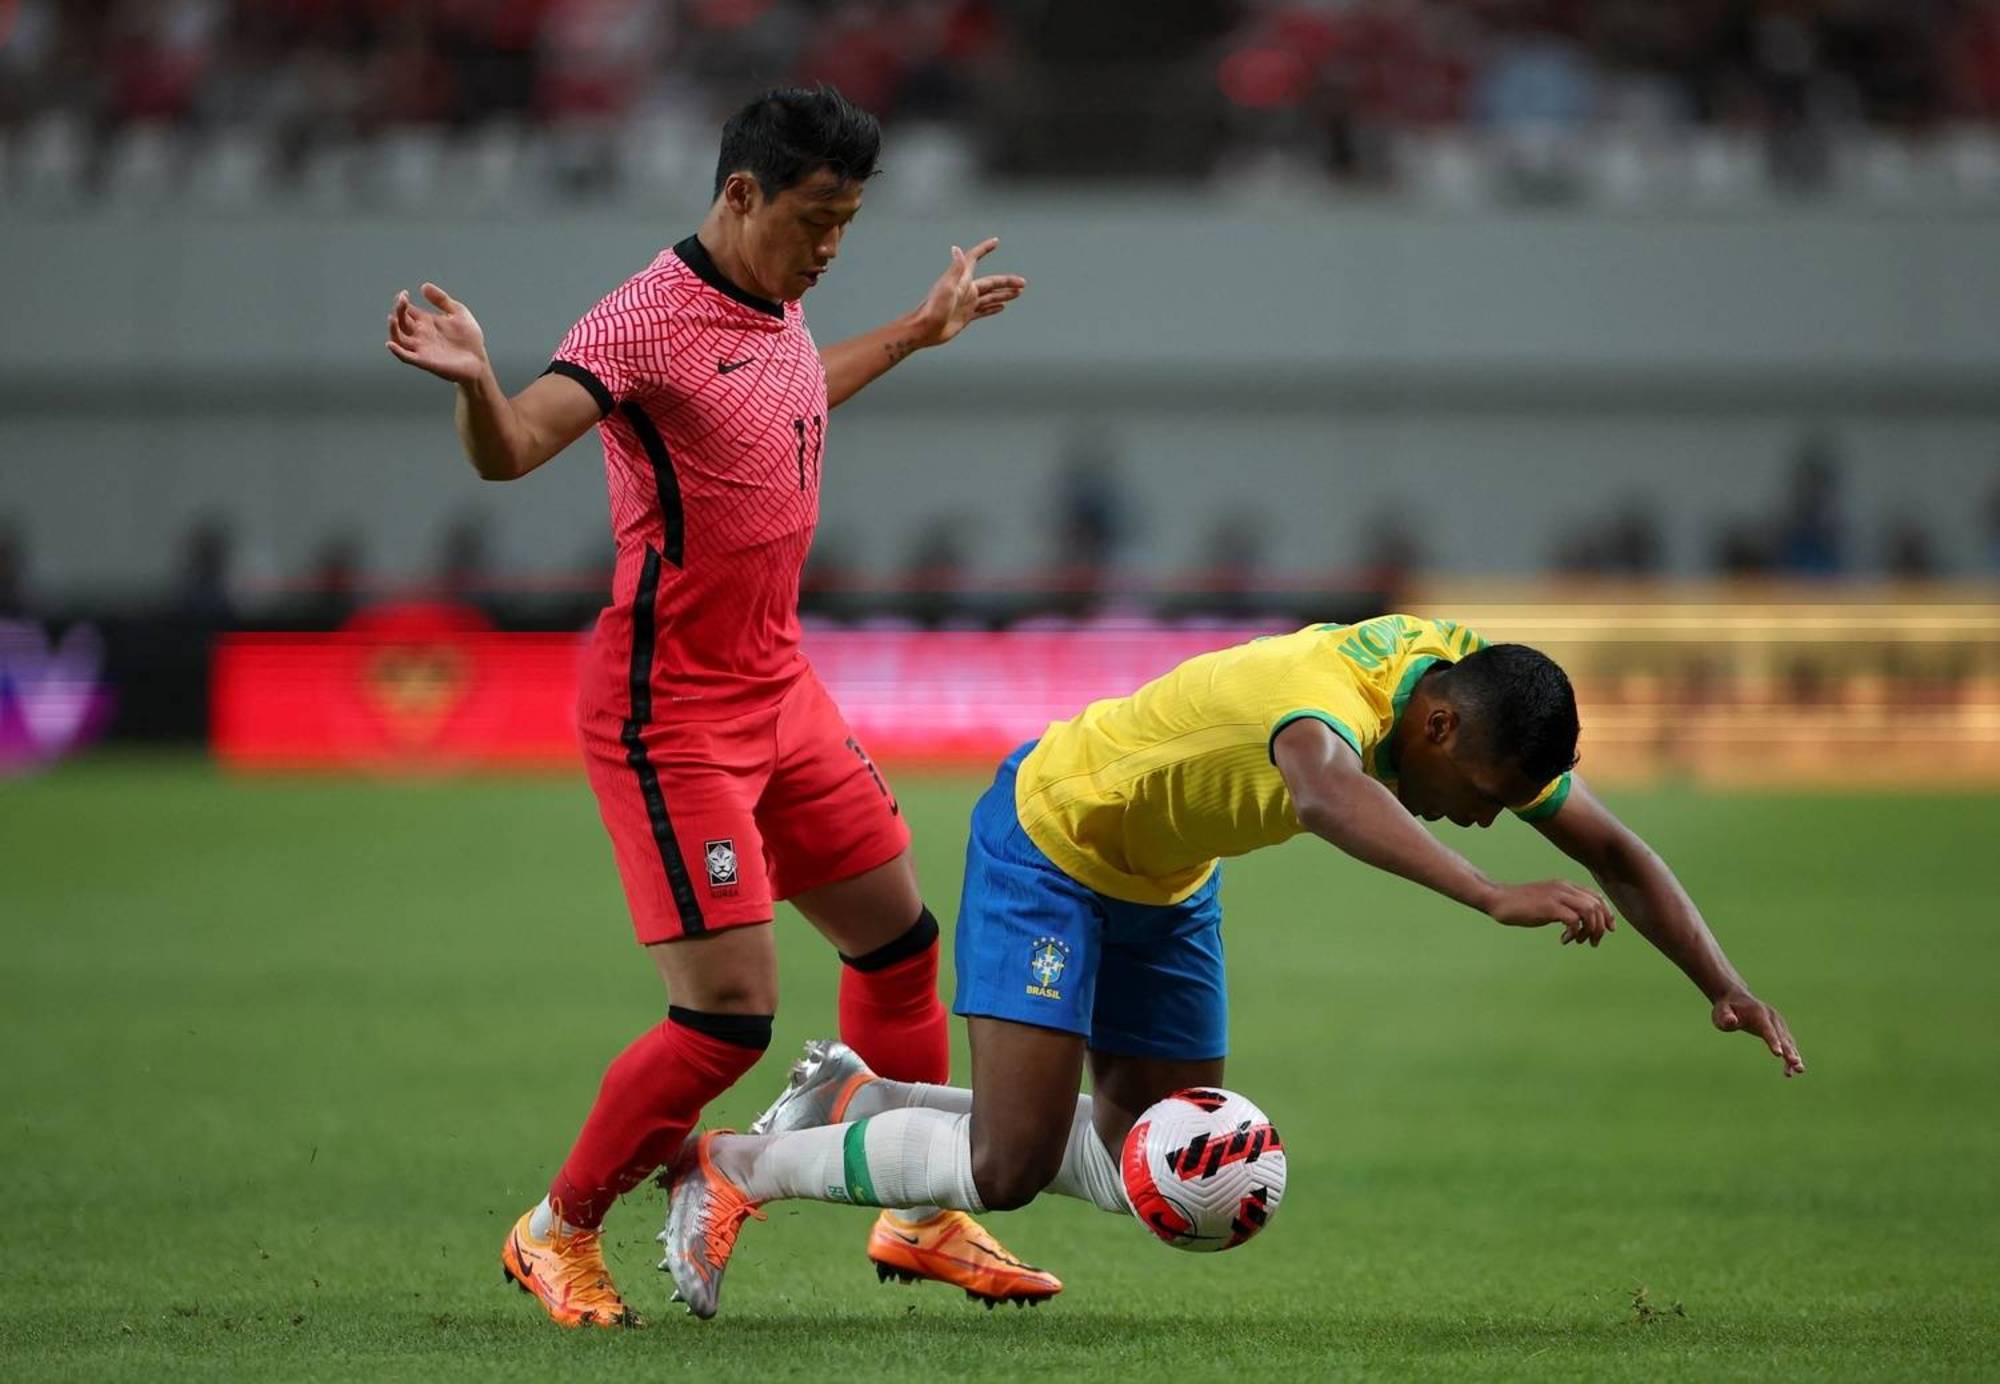 Brasil vence Coreia do Sul com tranquilidade em jogo amistoso; confira  fotos da partida - Fotos - R7 Futebol